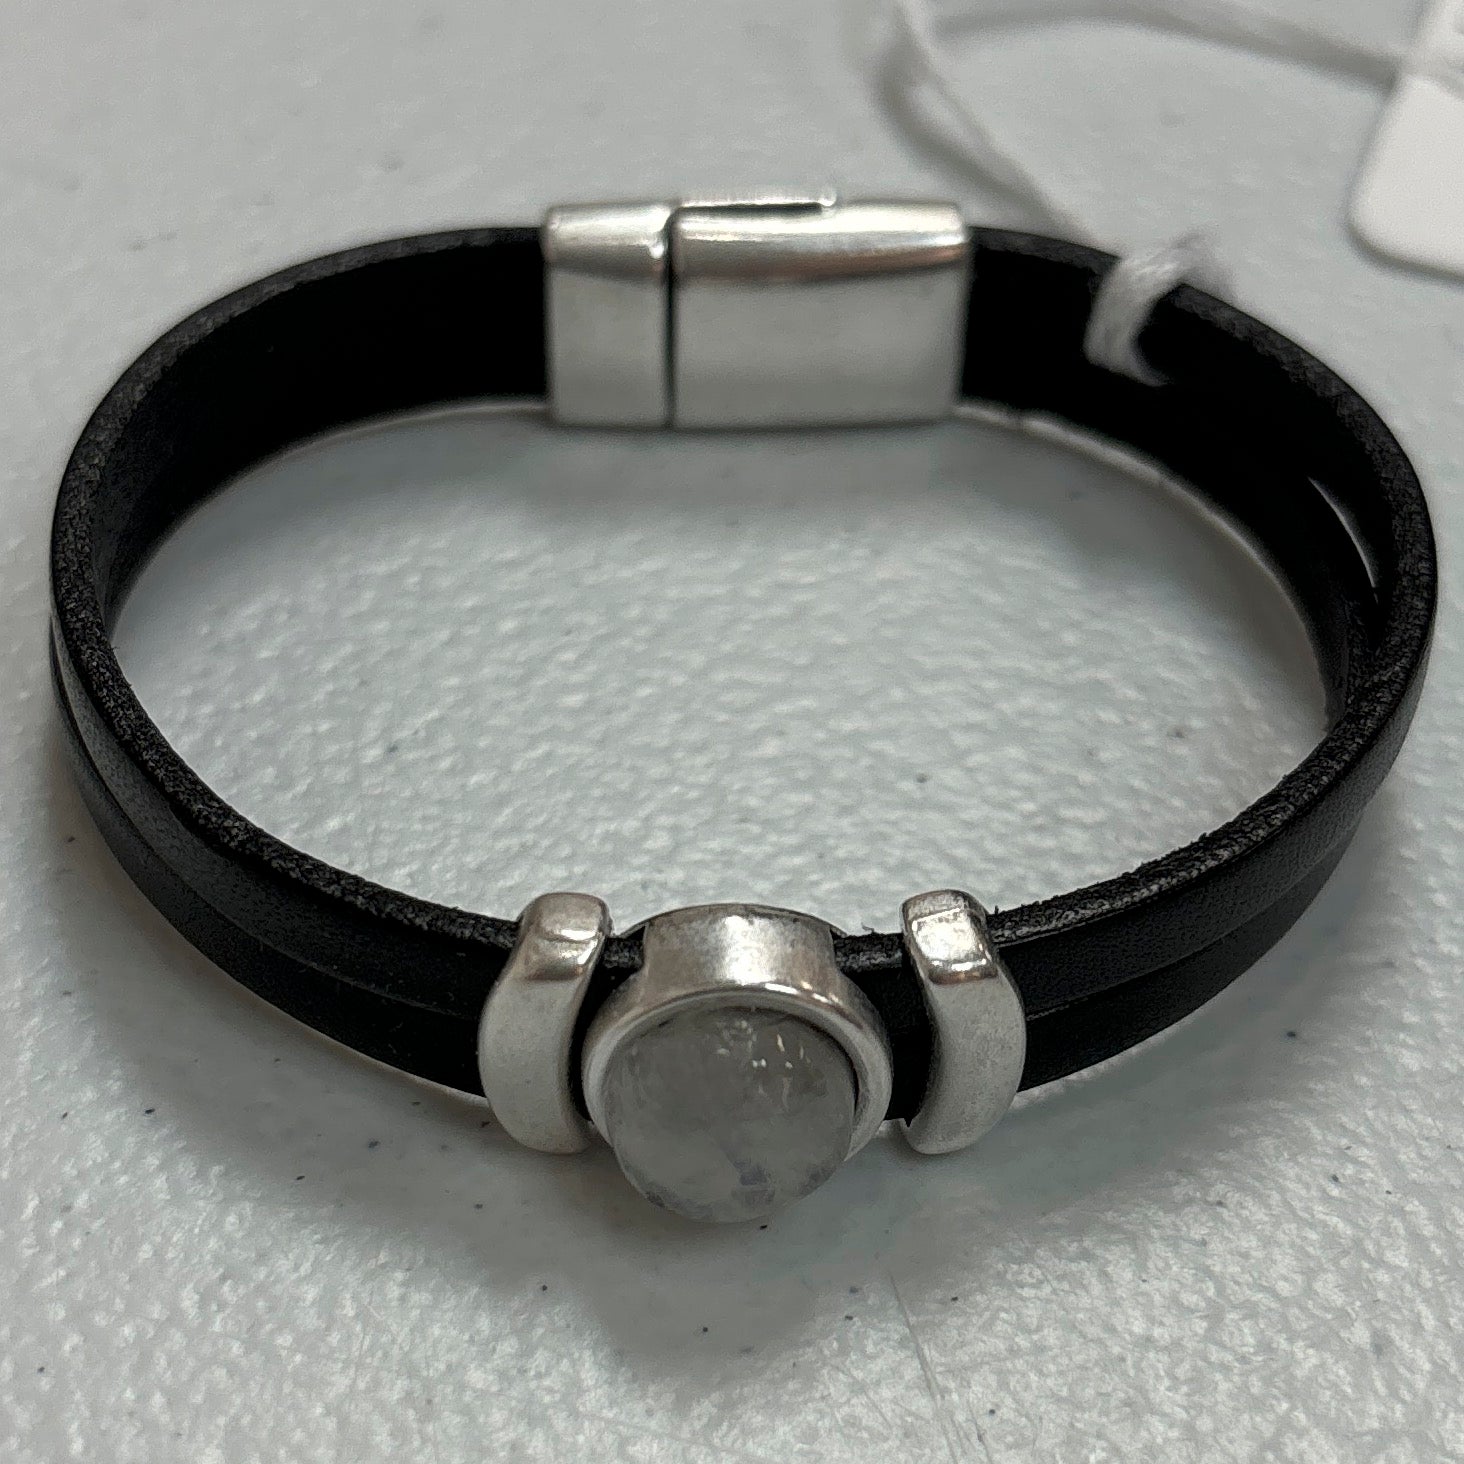 Moonstone Bracelet